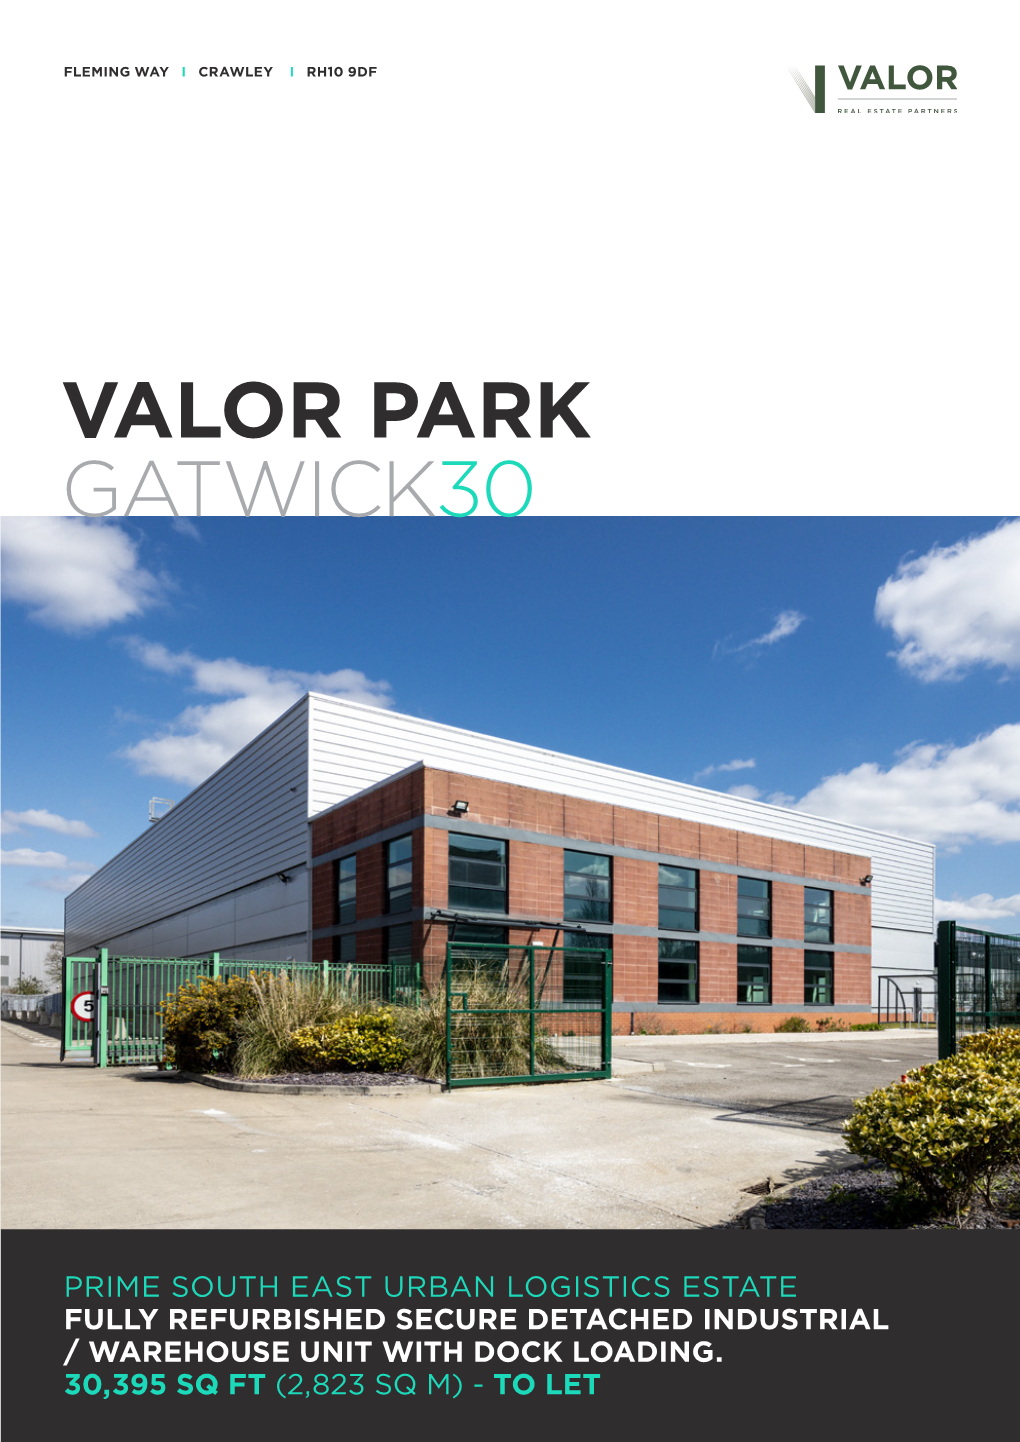 Valor Park Gatwick30